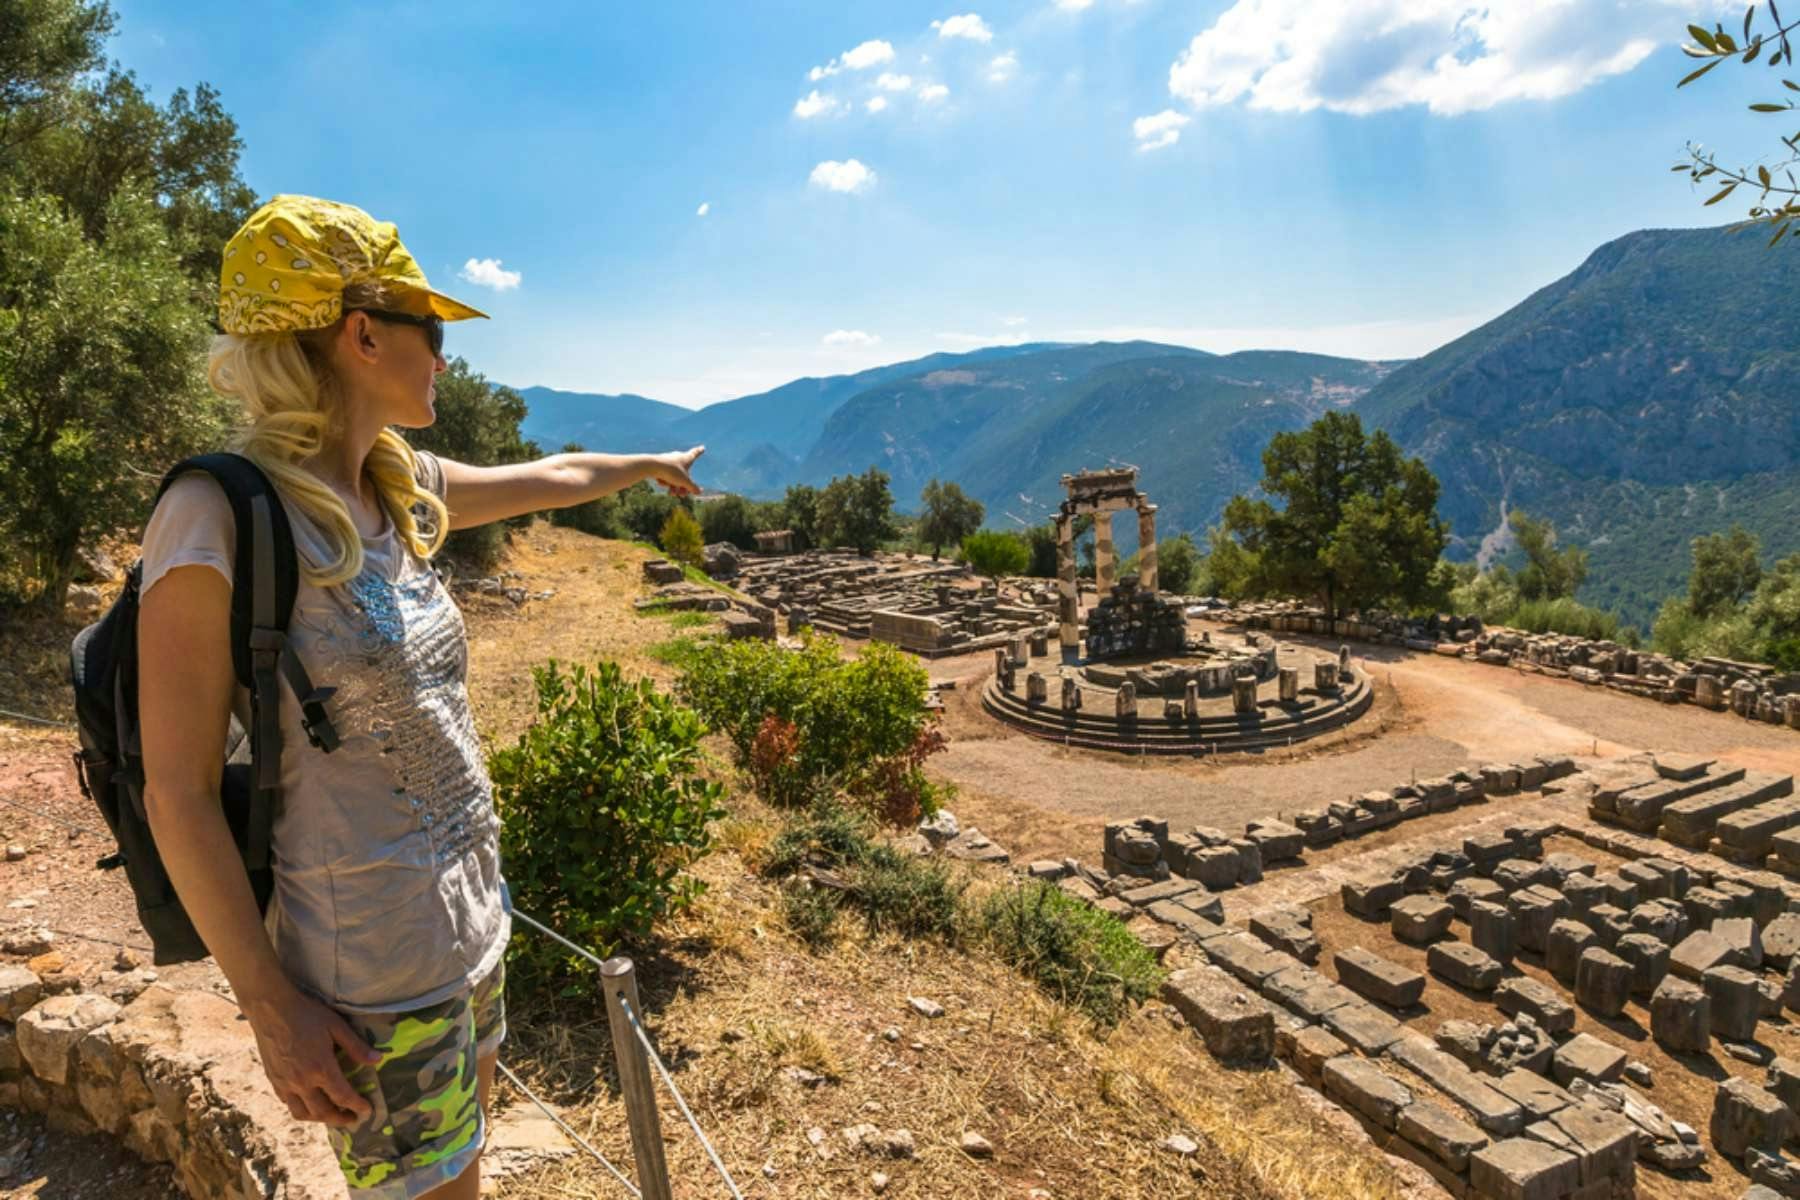 Delphi excursão guiada de dia inteiro com passeios míticos saindo de Atenas